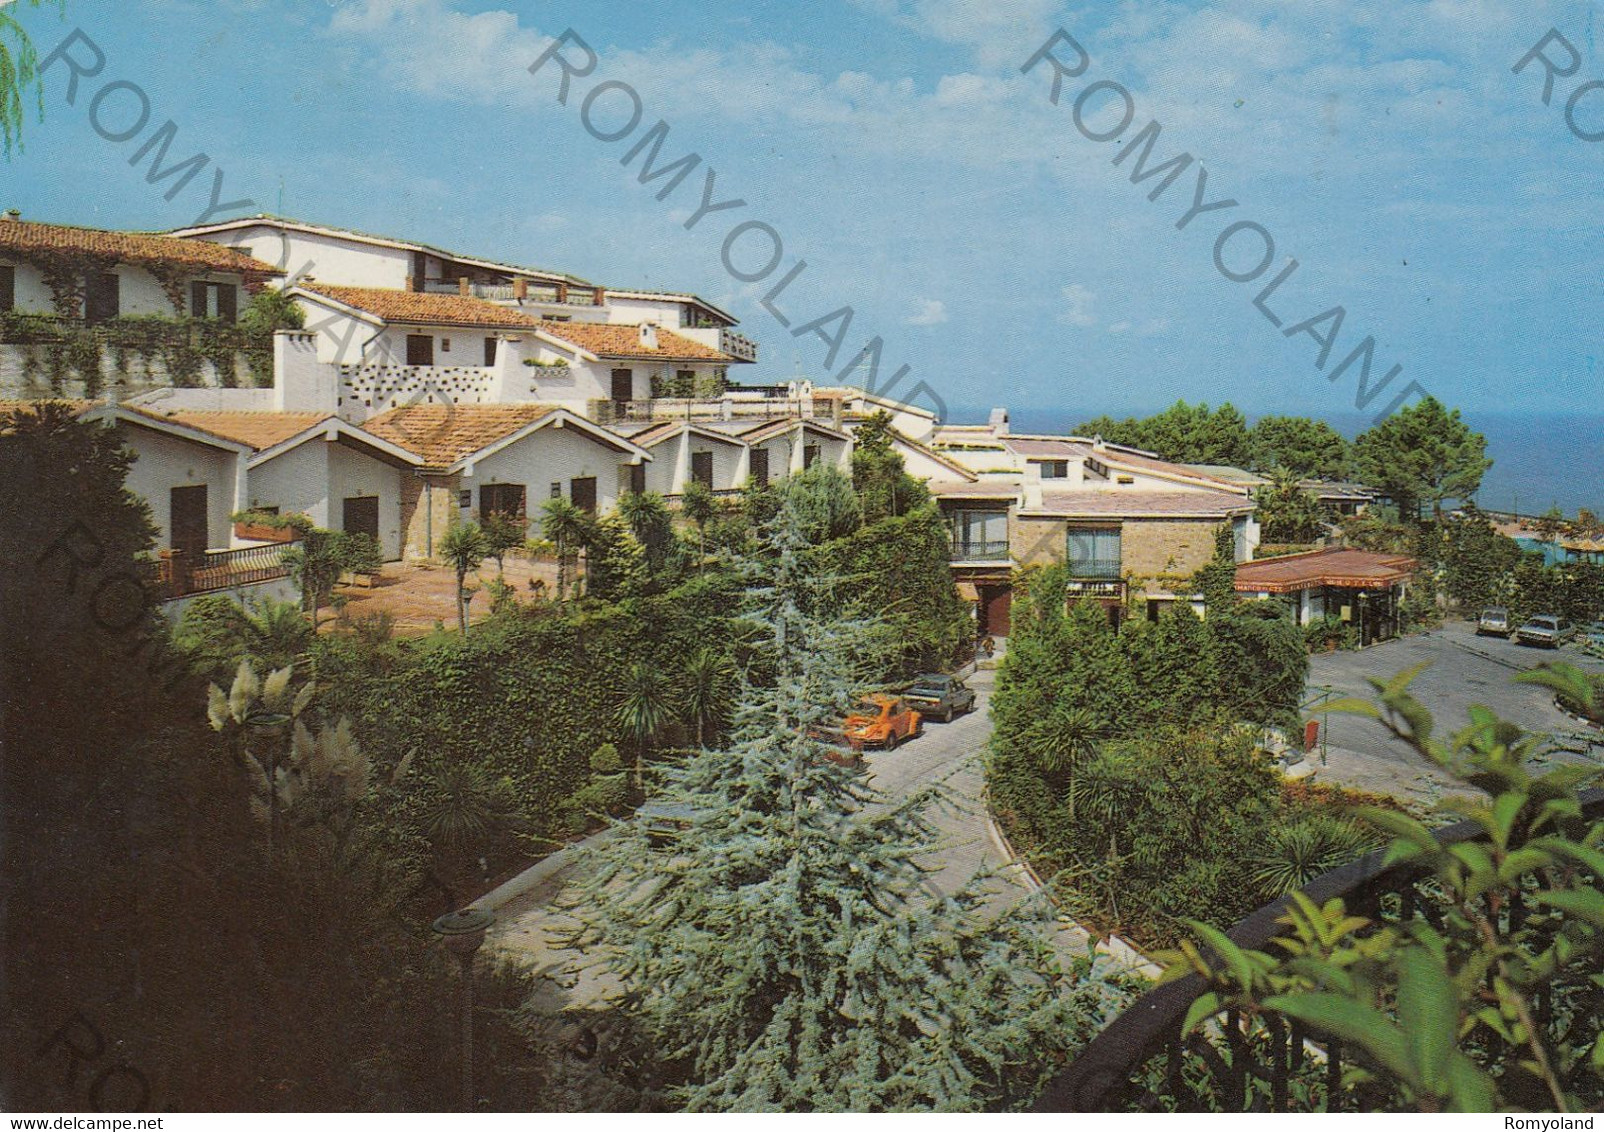 CARTOLINA S. MARCO DI CASTELLABATE, SALERNO, CAMPANIA, GRAND HOTEL CASTELSANDRA,  ESTATE, BARCHE A VELA, VIAGGIATA 1982 - Battipaglia